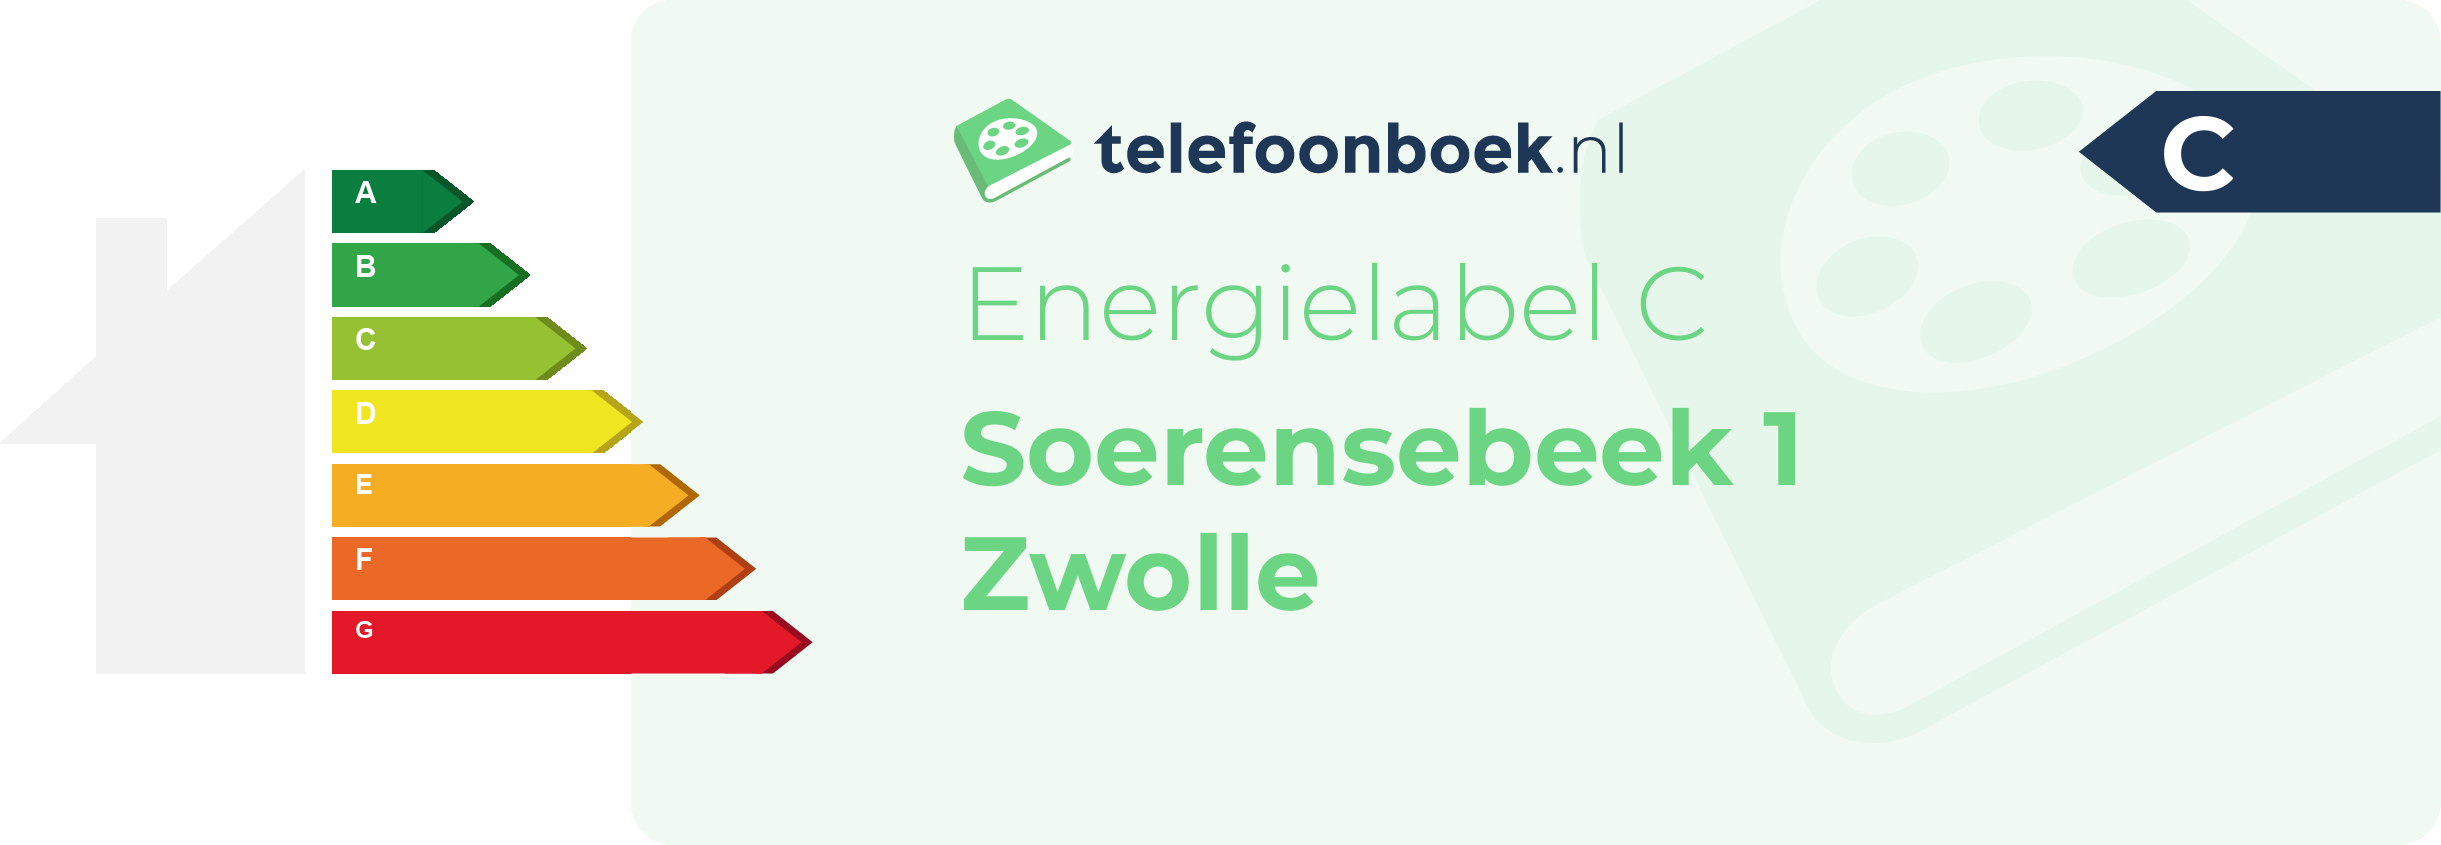 Energielabel Soerensebeek 1 Zwolle